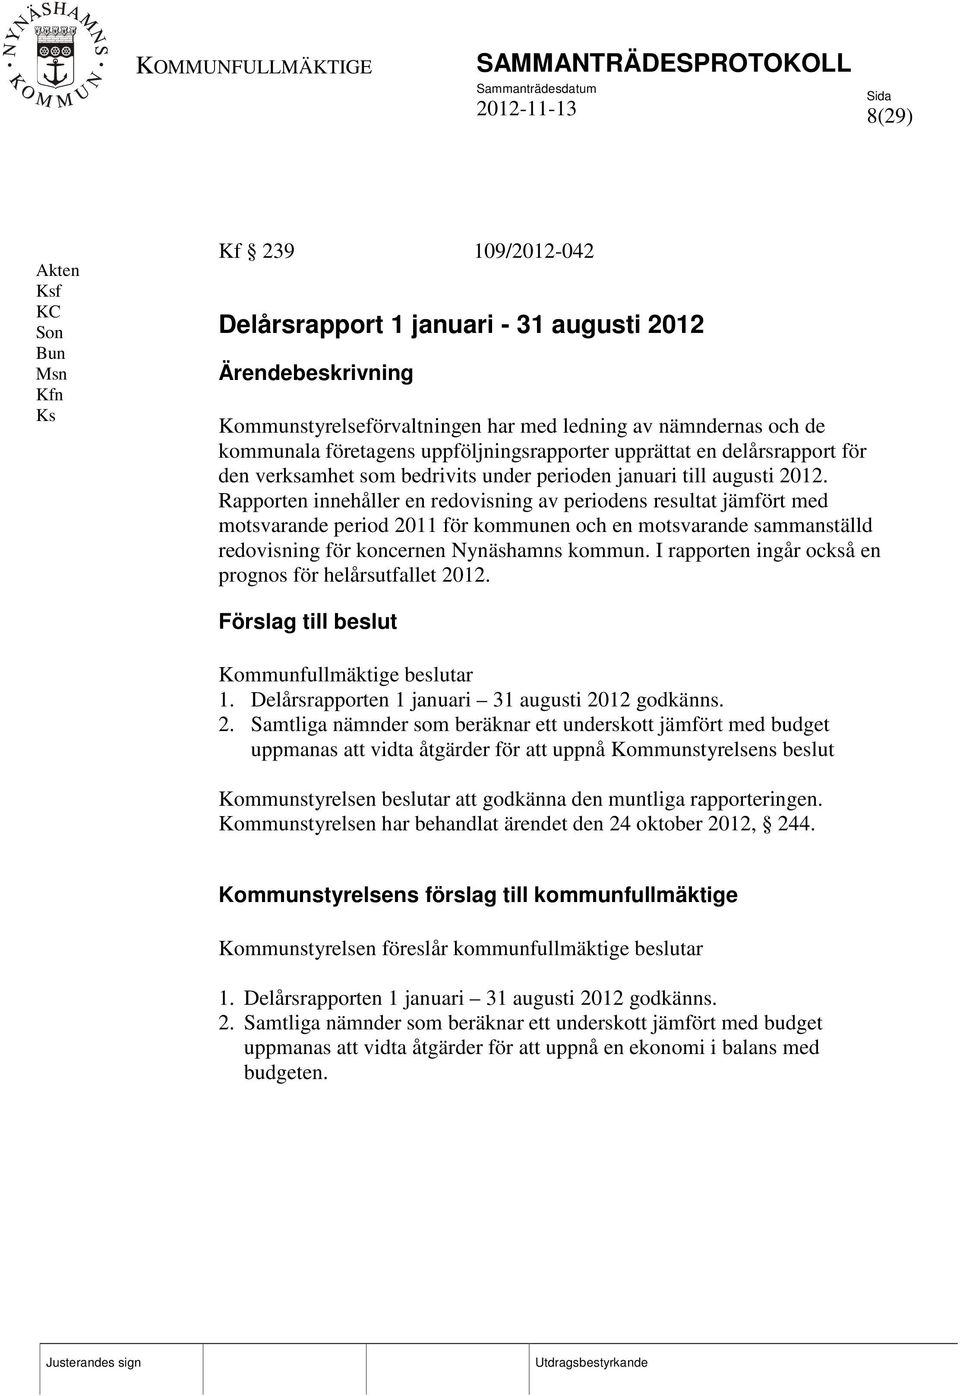 Rapporten innehåller en redovisning av periodens resultat jämfört med motsvarande period 2011 för kommunen och en motsvarande sammanställd redovisning för koncernen Nynäshamns kommun.